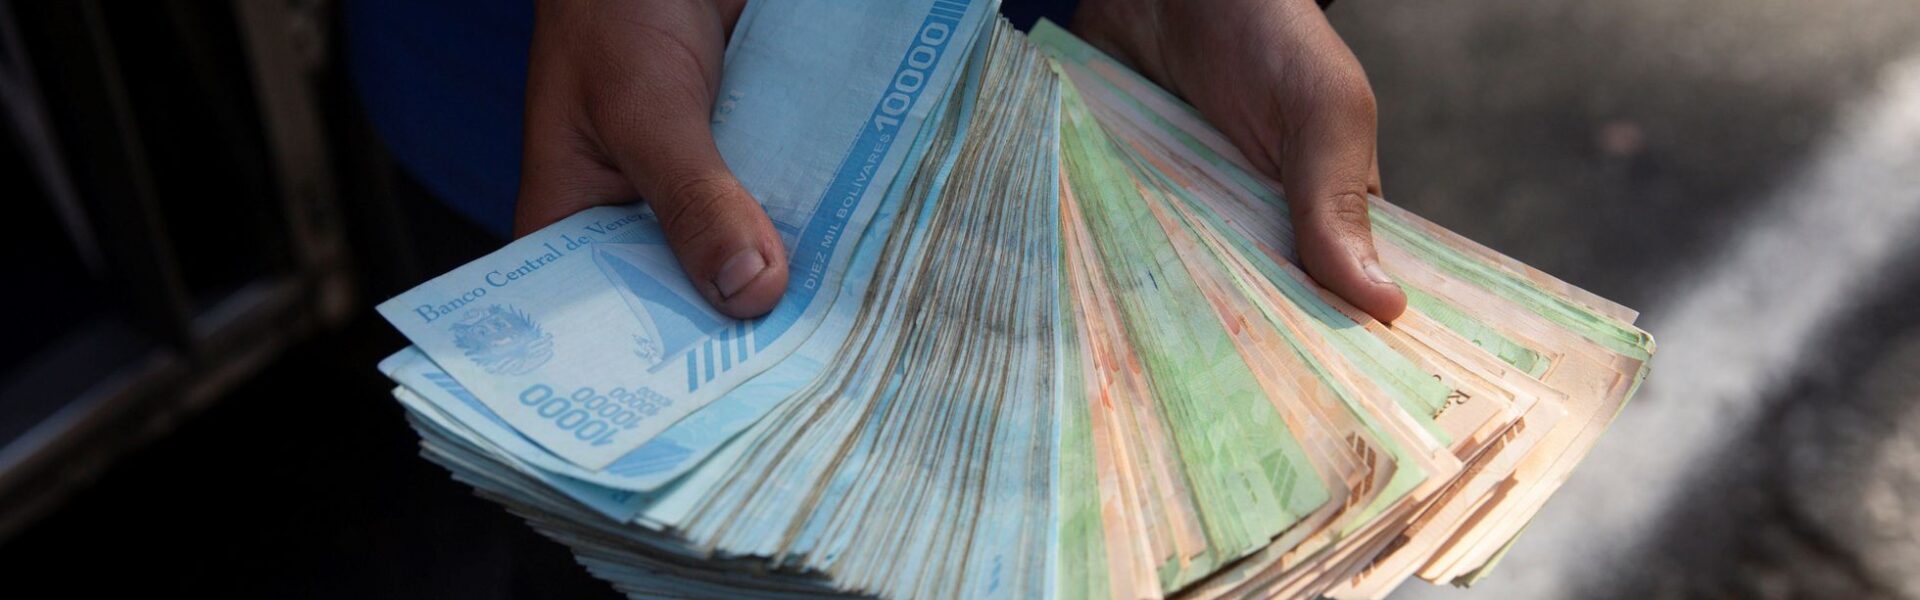 Venezuela elimina otros 6 ceros a su moneda por hiperinflación